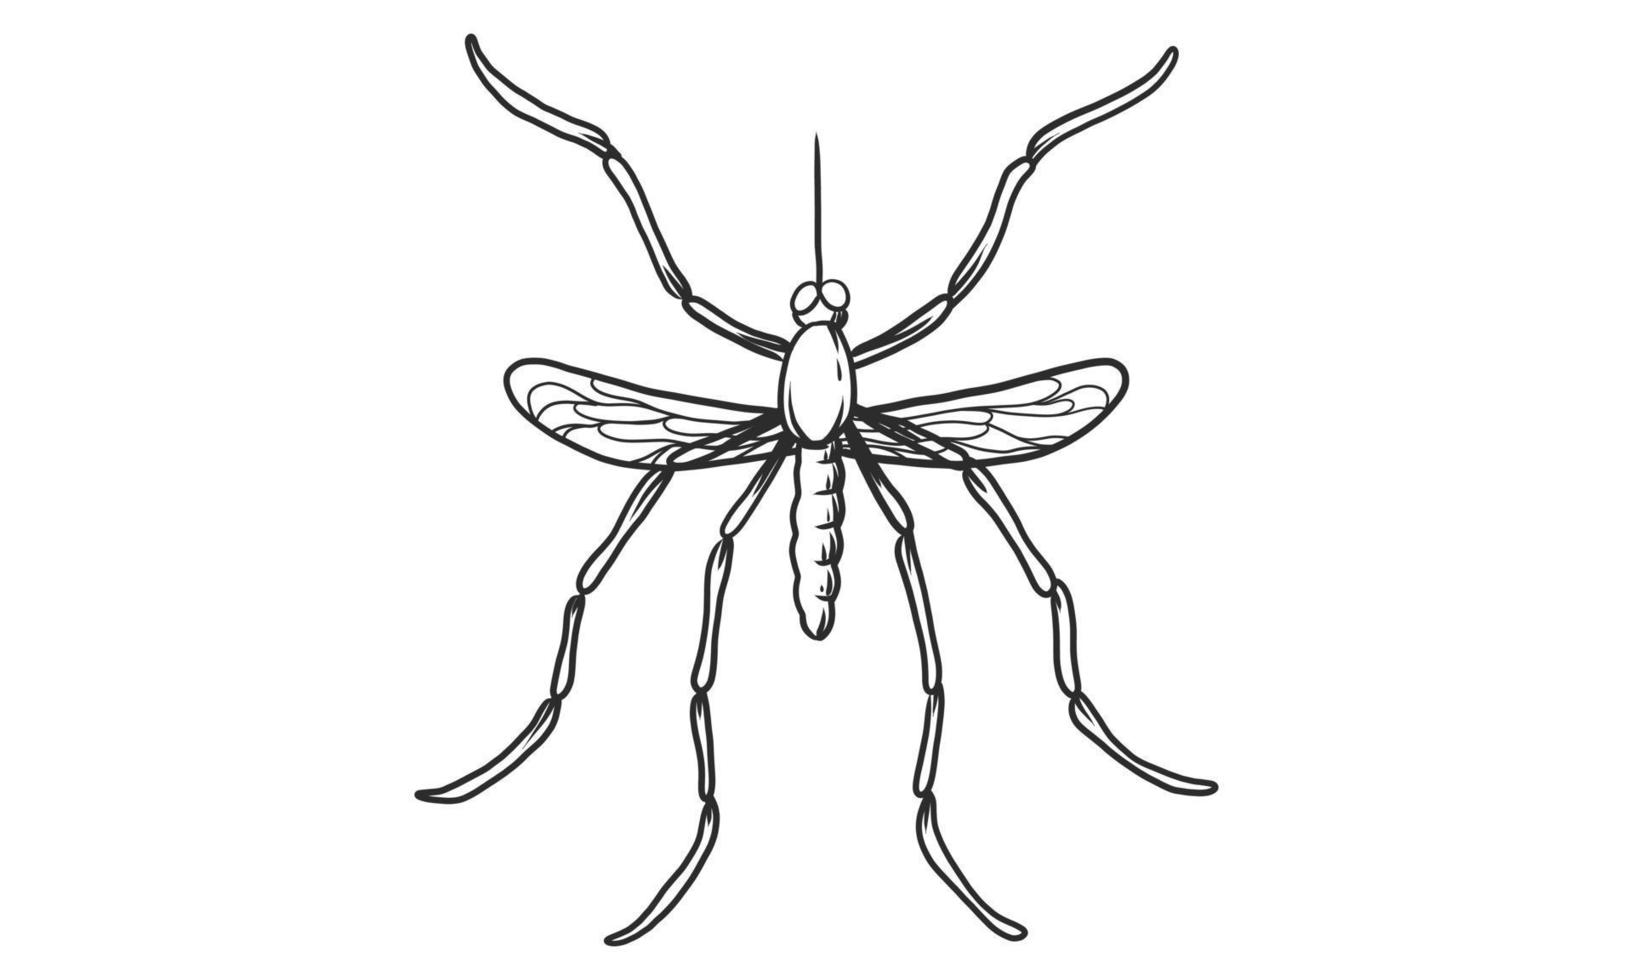 illustration vectorielle lineart de moustique sur fond blanc, croquis d'insecte moustique dessinés à la main vue de dessus vecteur